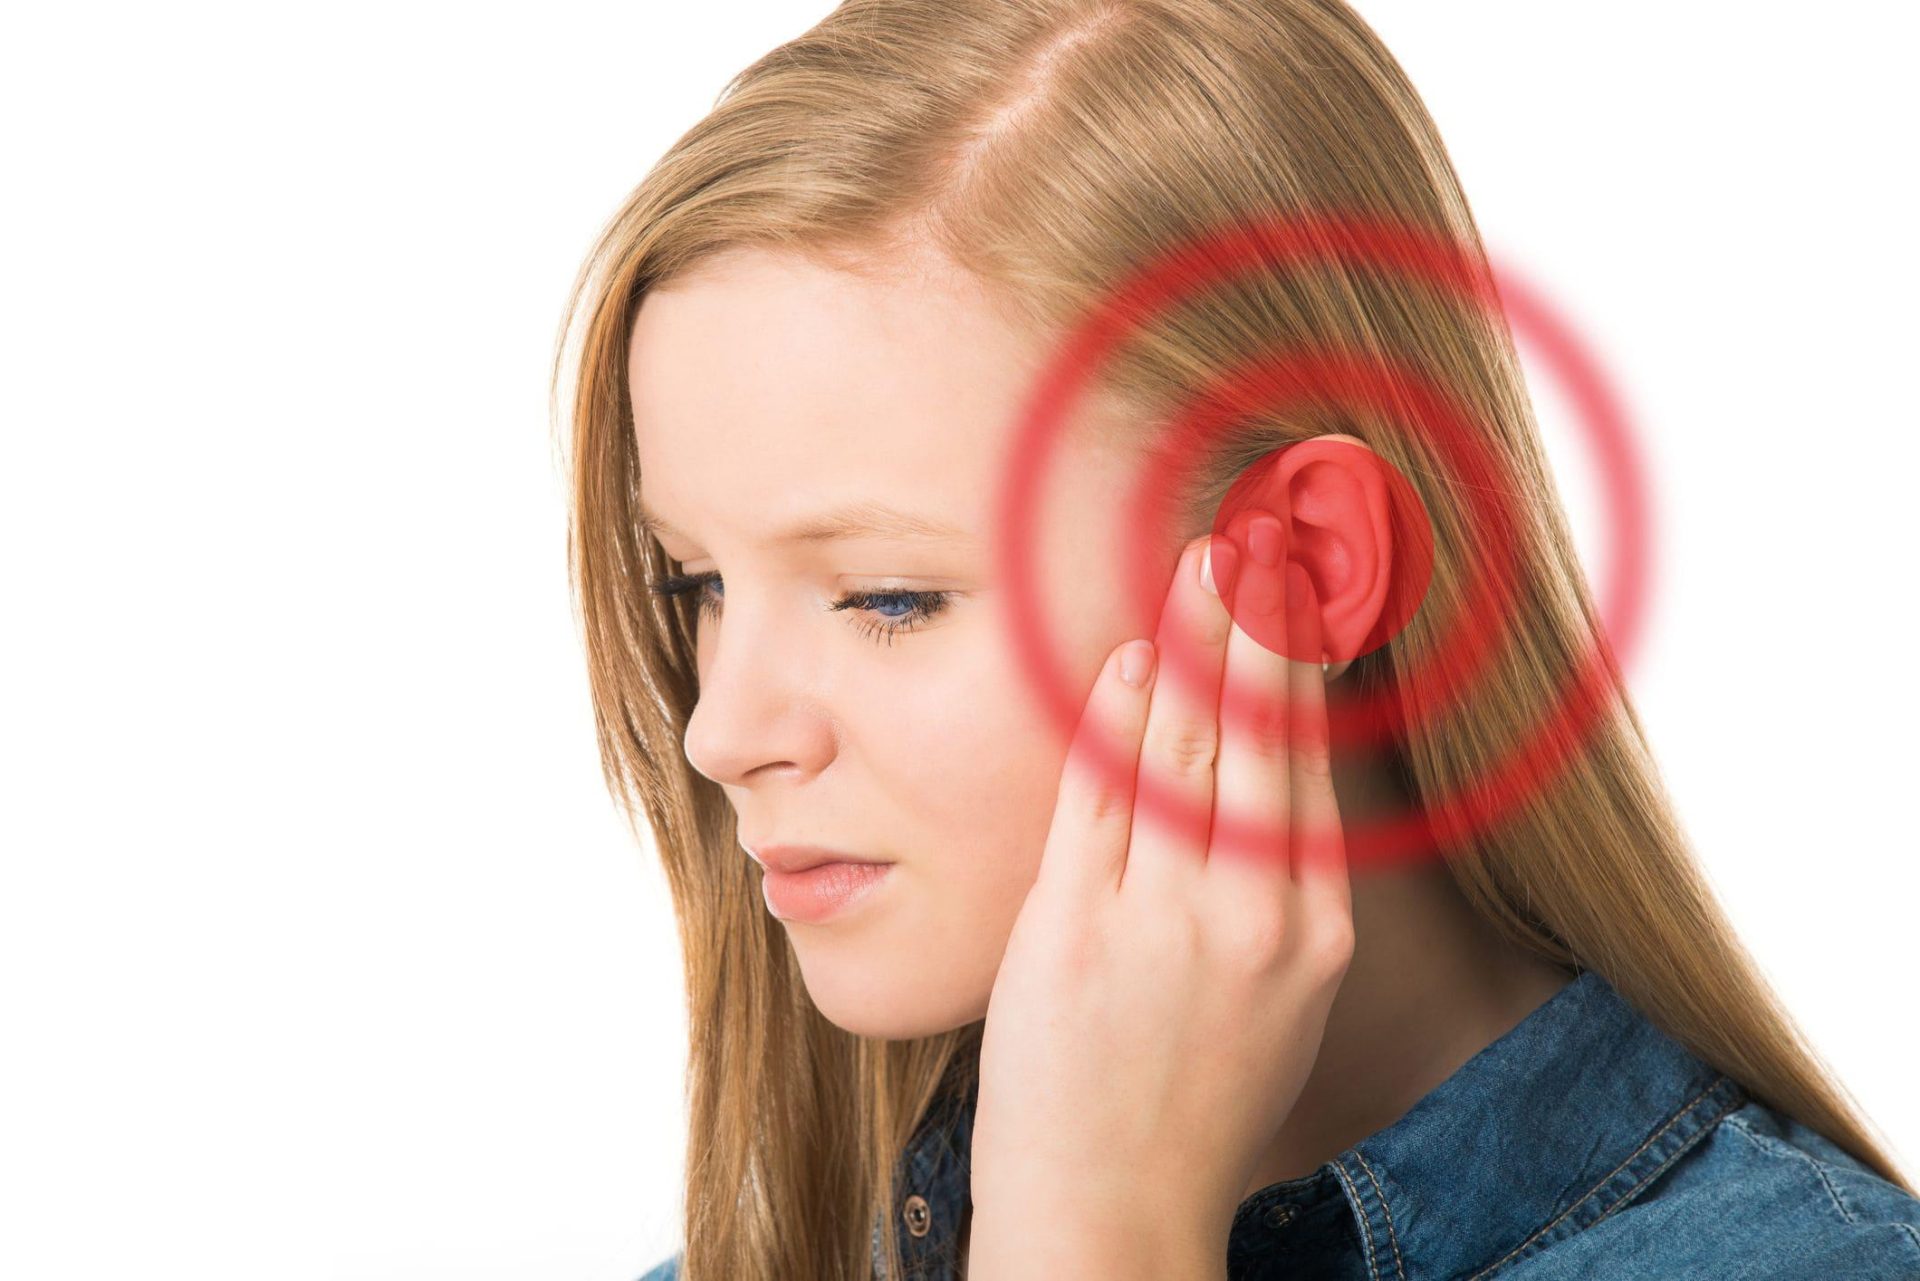 التهاب الأذن الوسطى والدوخة